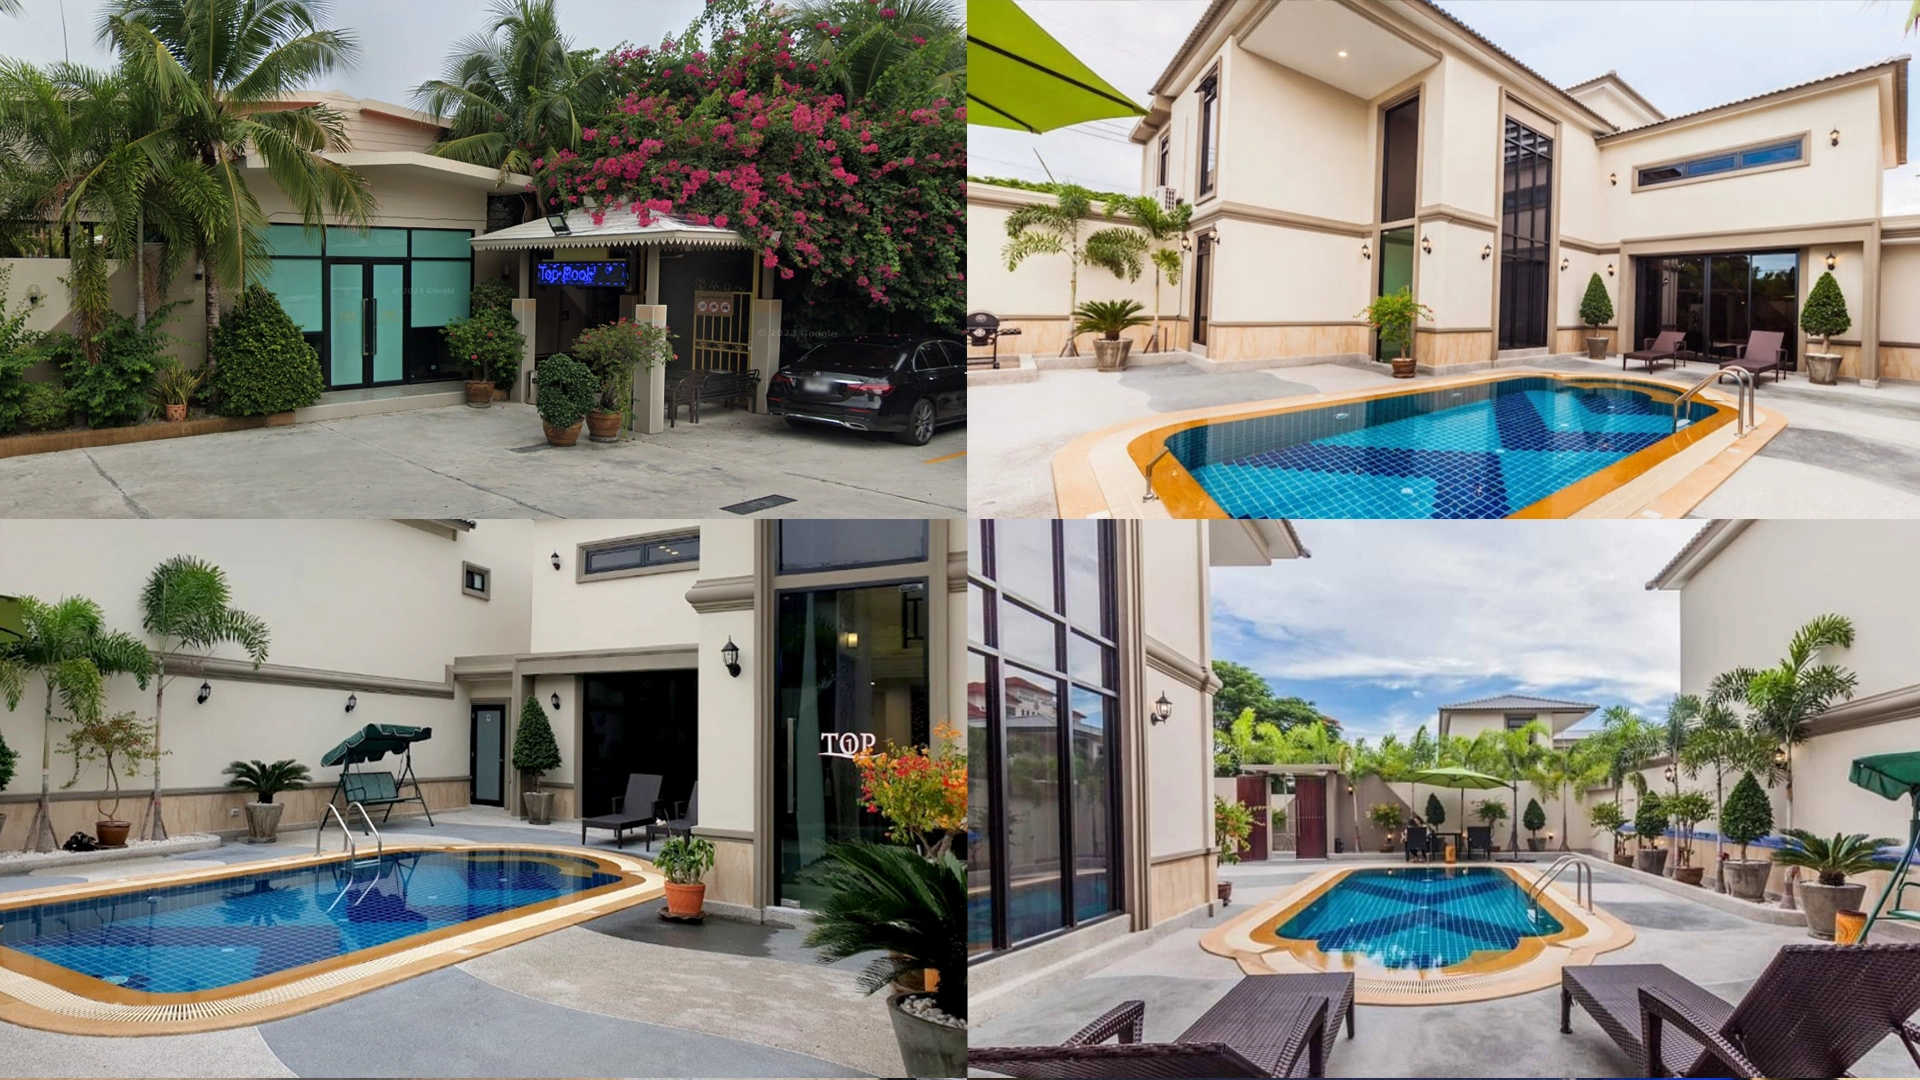 [파타야 풀빌라] 탑 풀빌라 파타야 (Top Pool Villa Pattaya)